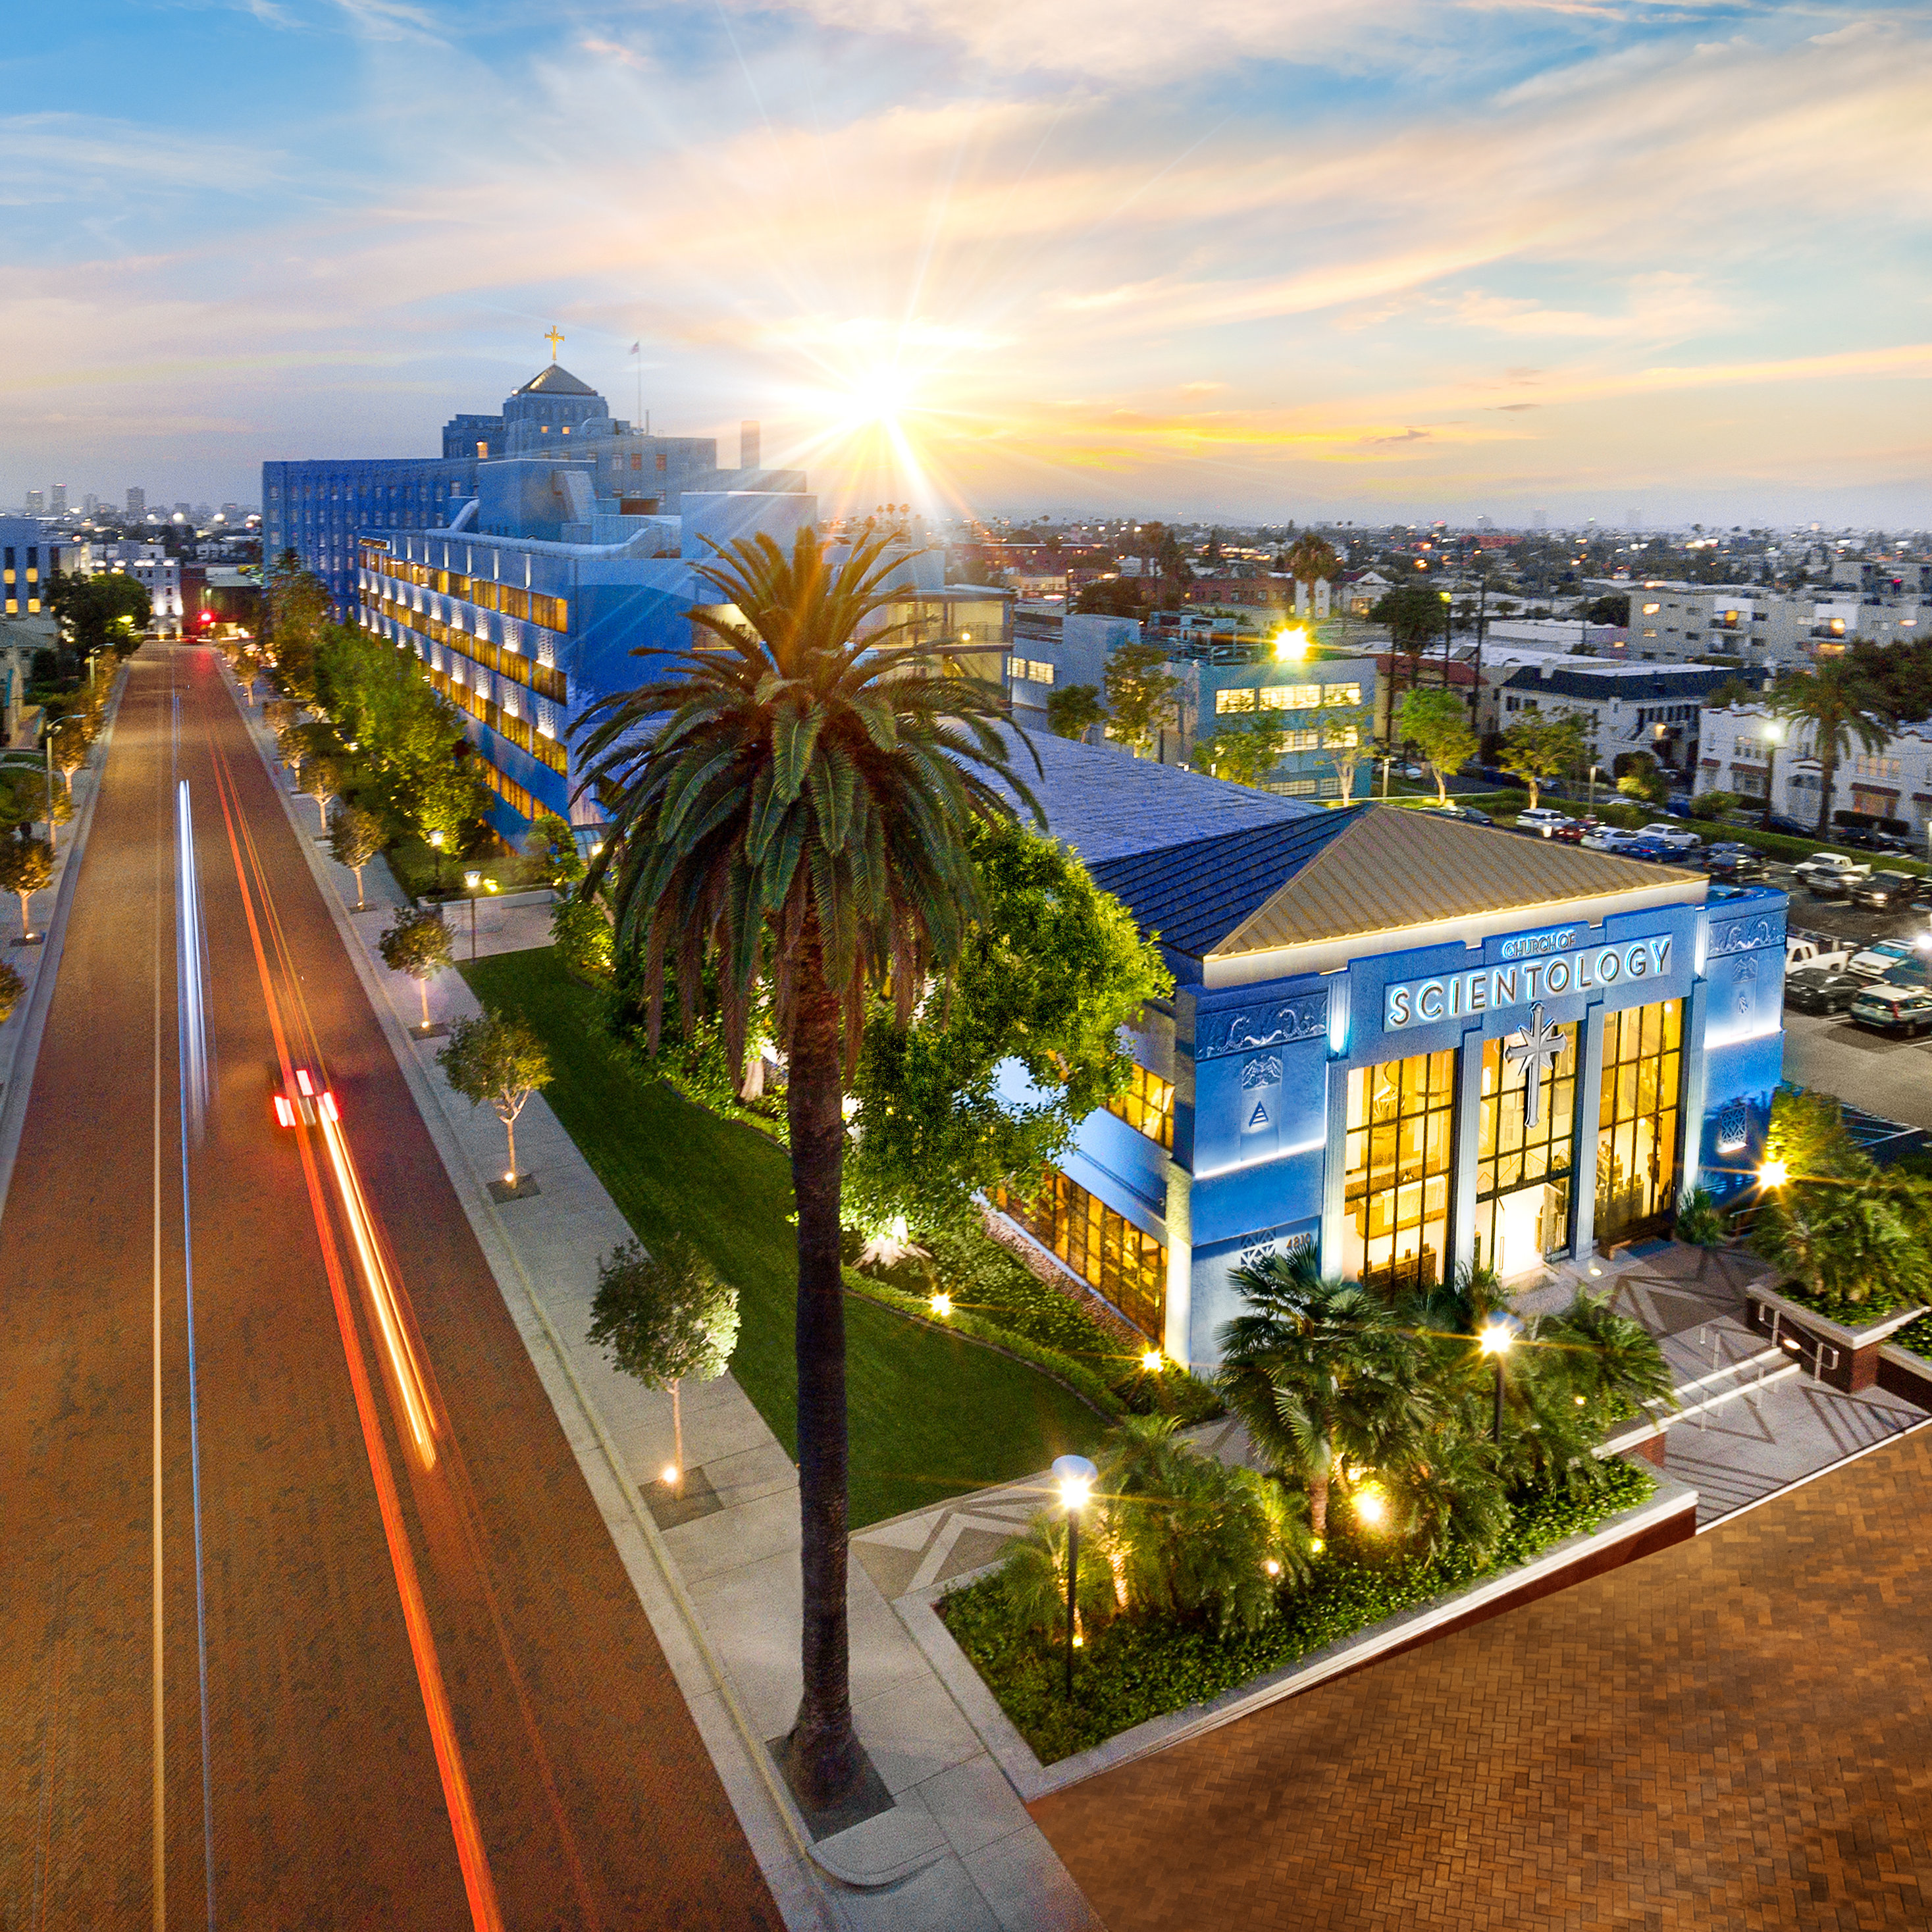 Los Angeles A nézők teljes bepillantást kapnak a Sunset Boulevard és az L. Ron Hubbard Way kereszteződésénél álló Scientology Egyház tereibe és belső történéseibe.